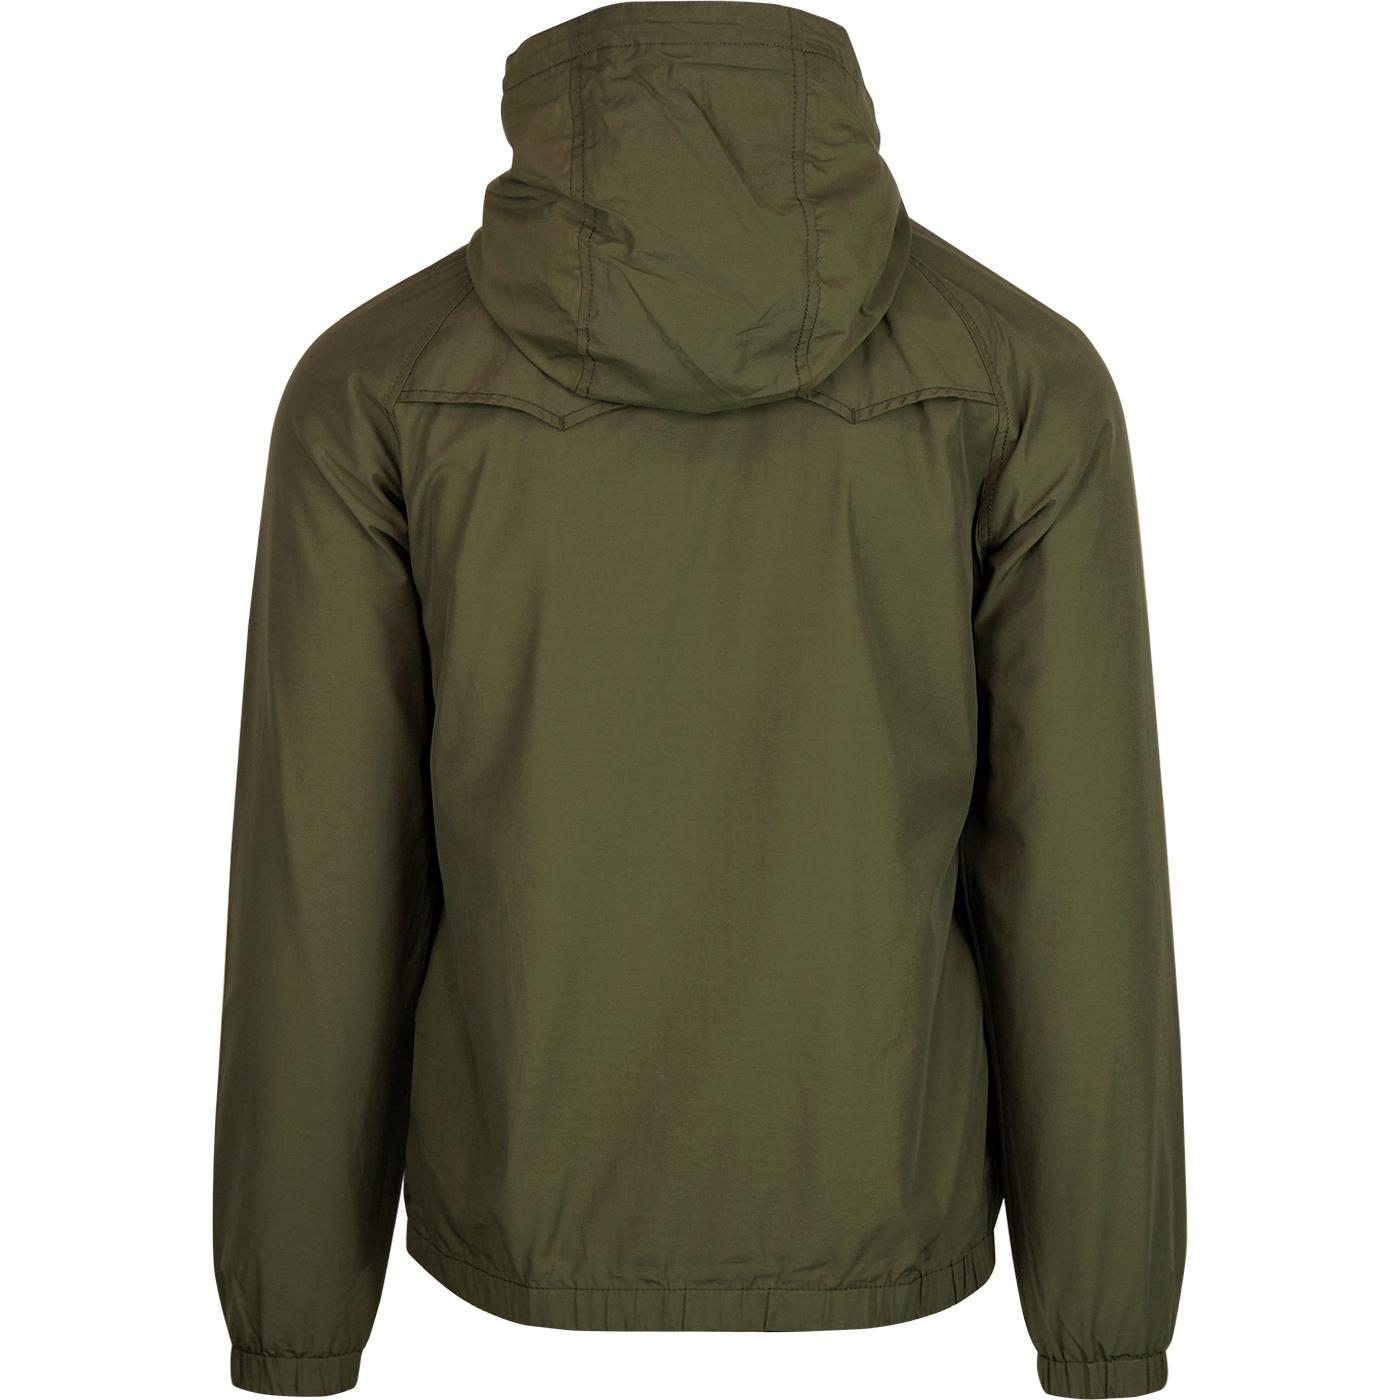 Ben Sherman Hooded Jacket in Khaki Green waterproof nylon cotton blend 